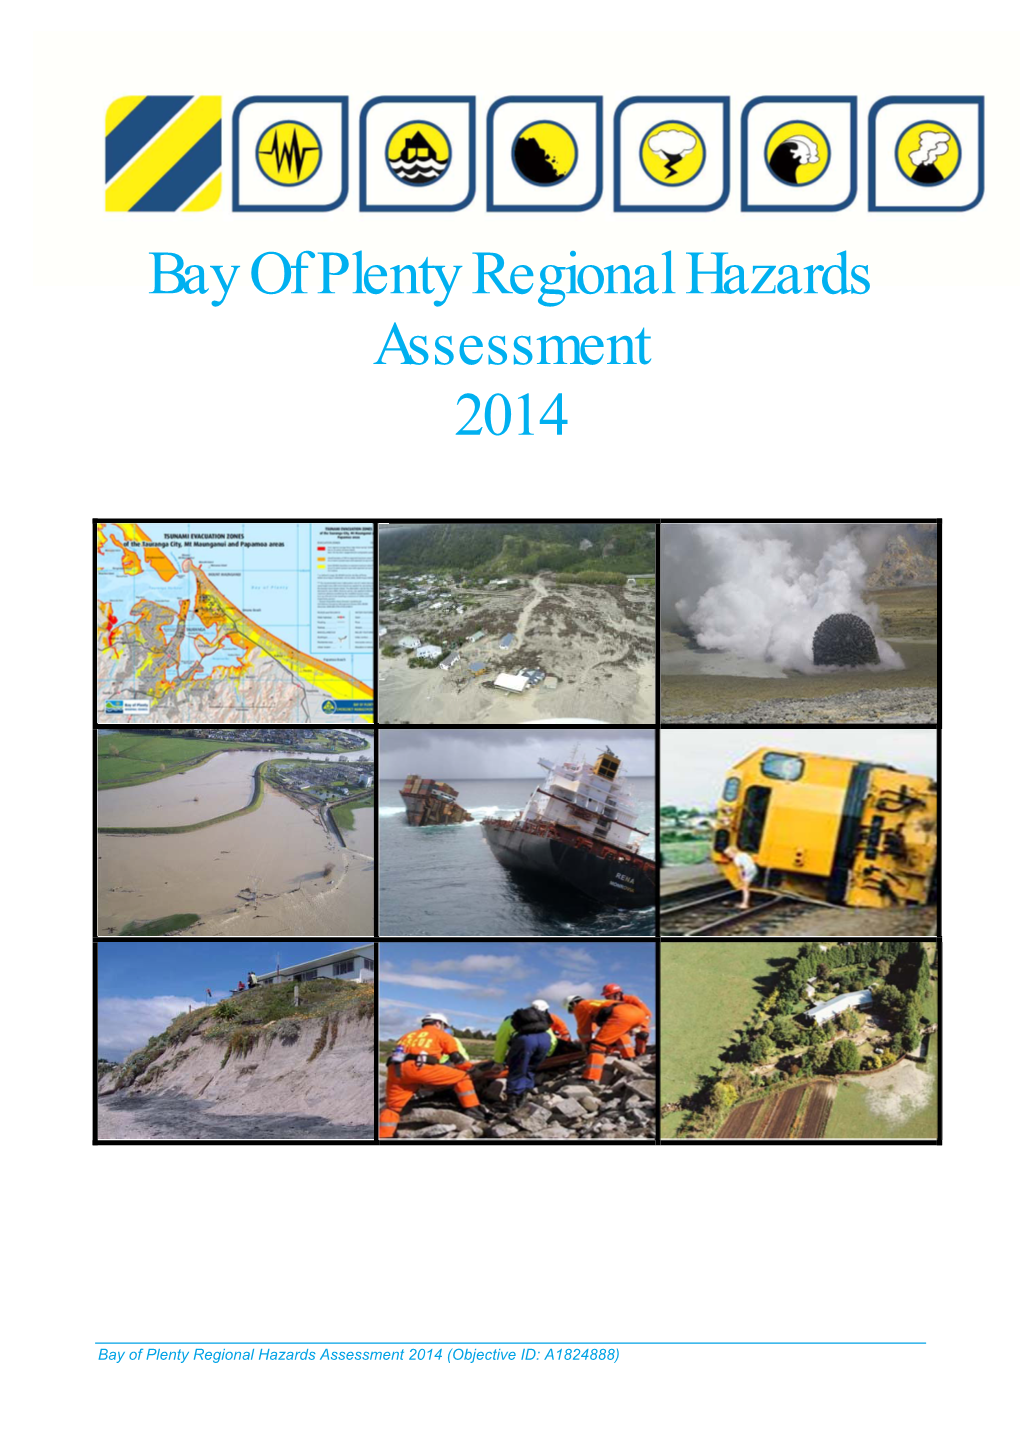 Bay of Plenty Regional Hazards Assessment 2014